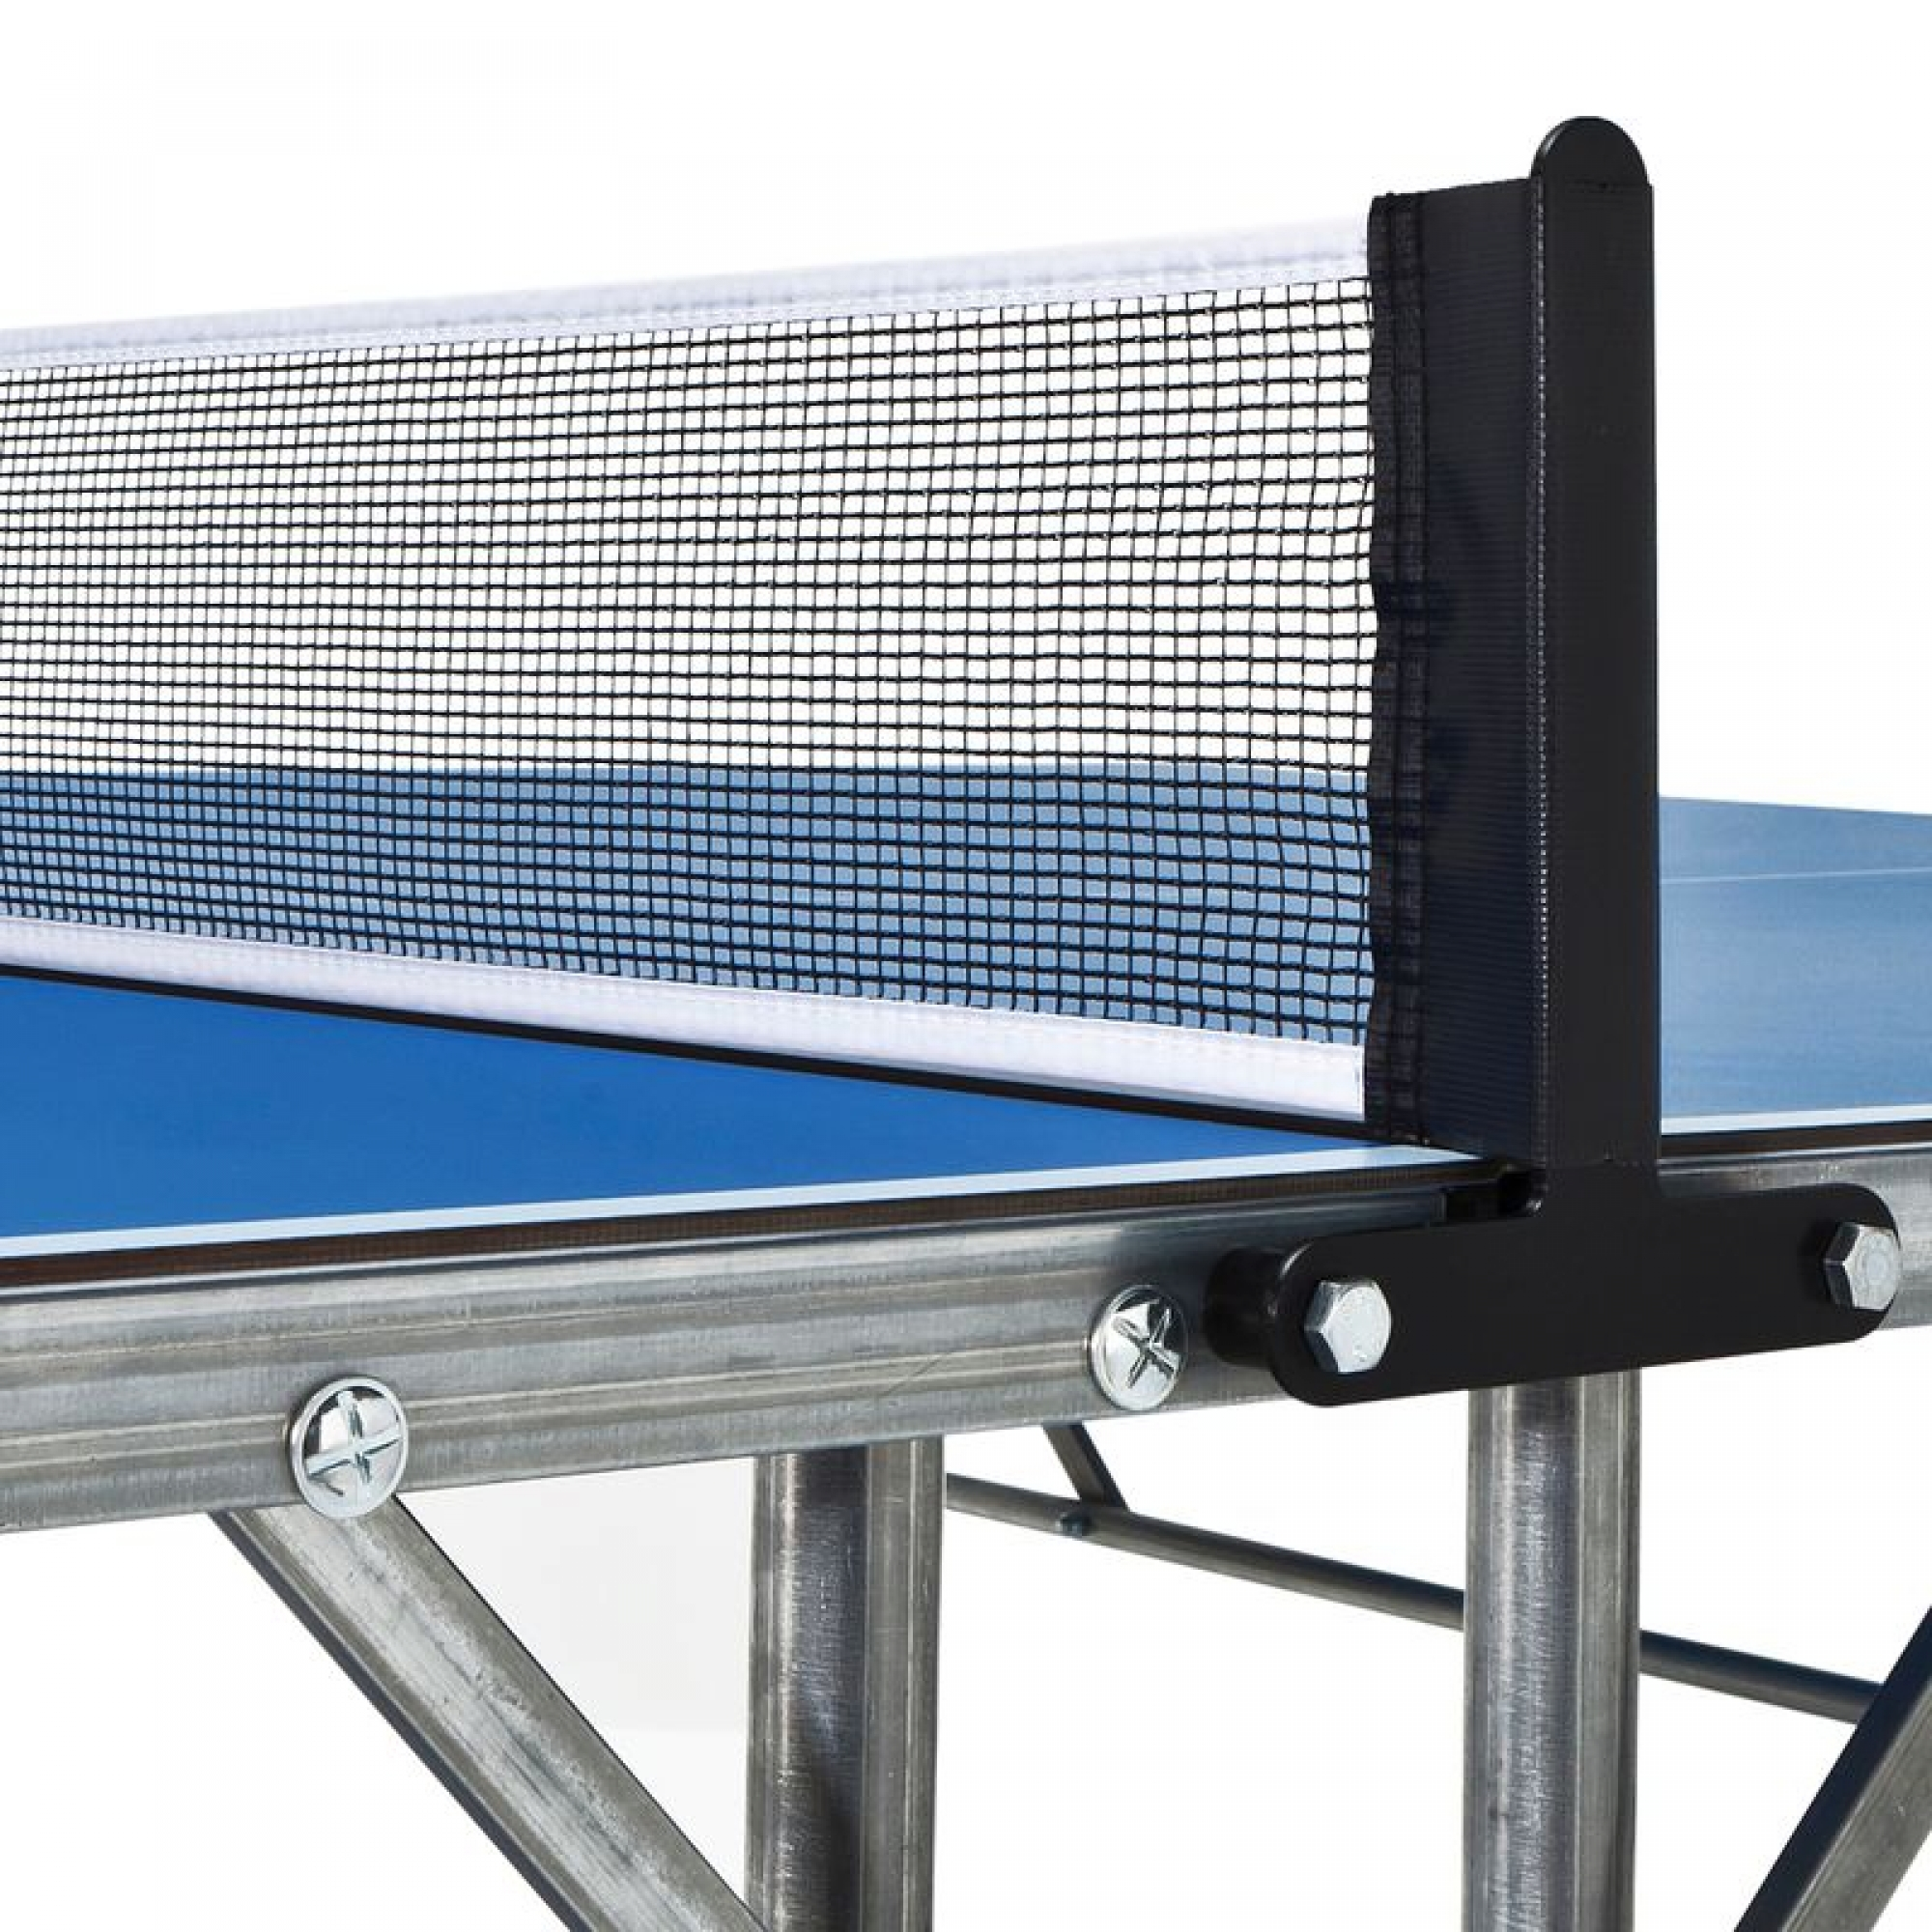 Filet pour table de tennis de table FT 720 Outdoor & PPT130 Outdoor (